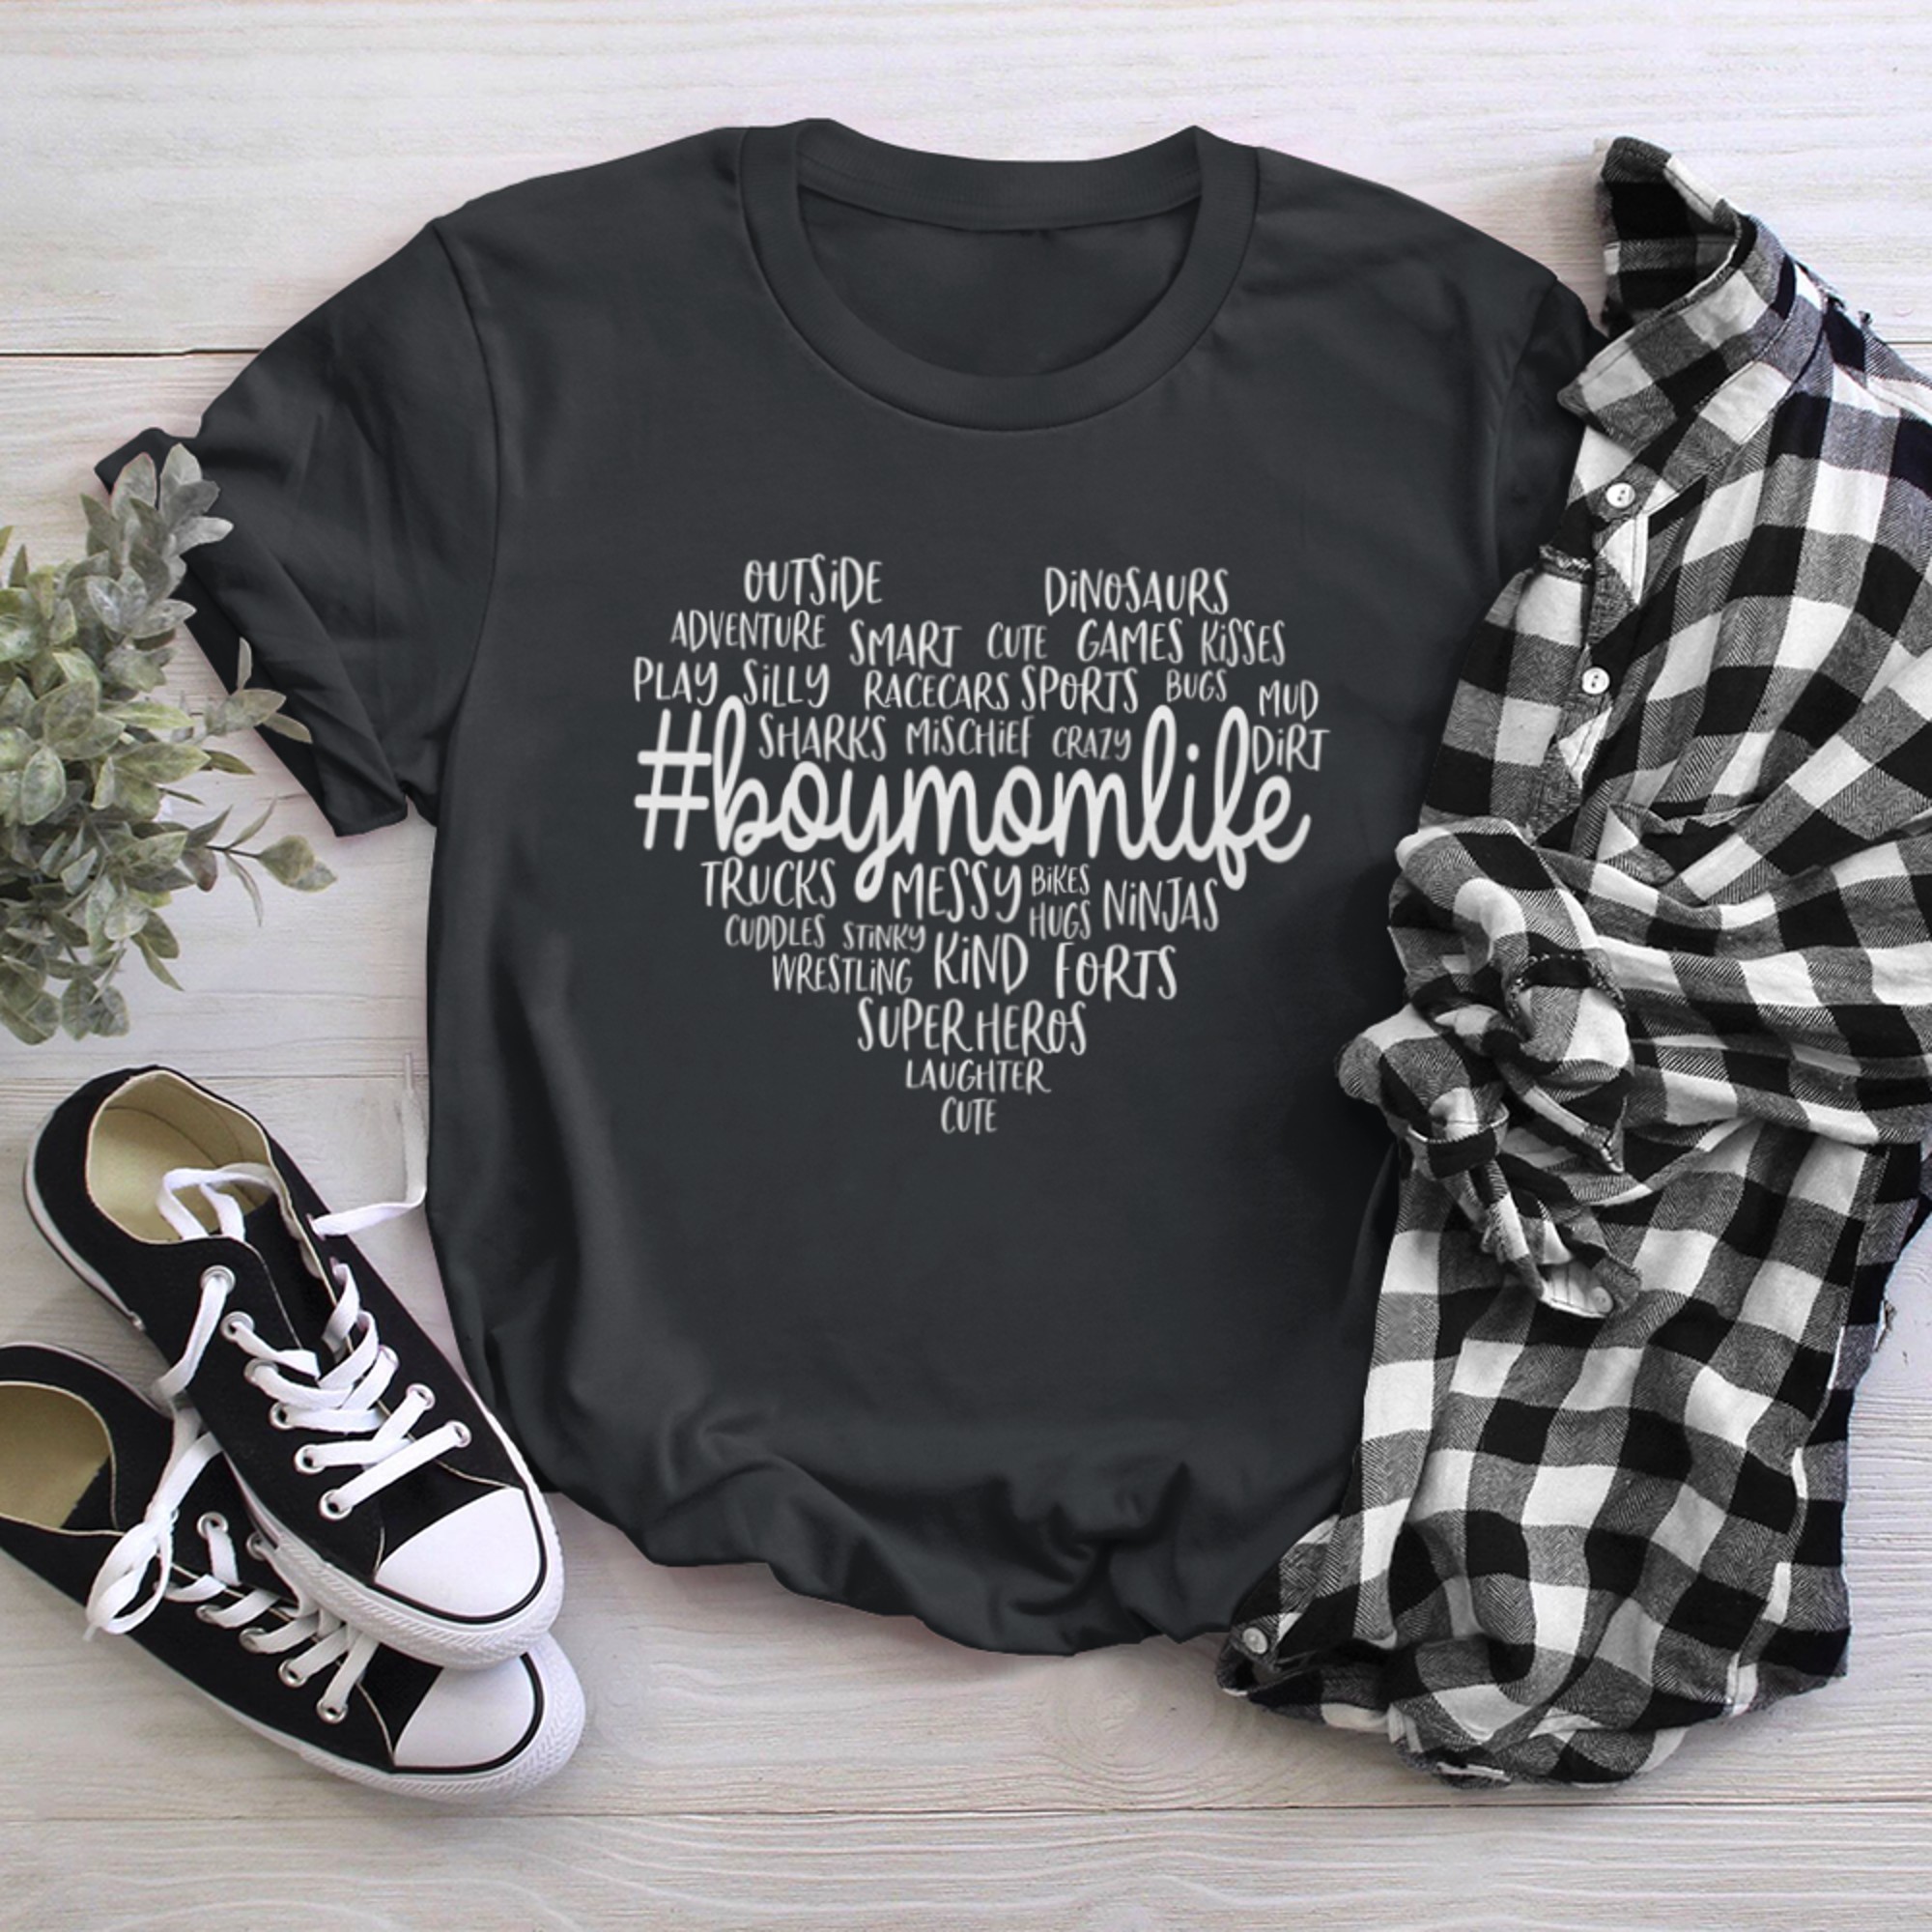 Mom of Cute #BoymomLife Heart - Mom Life t-shirt black